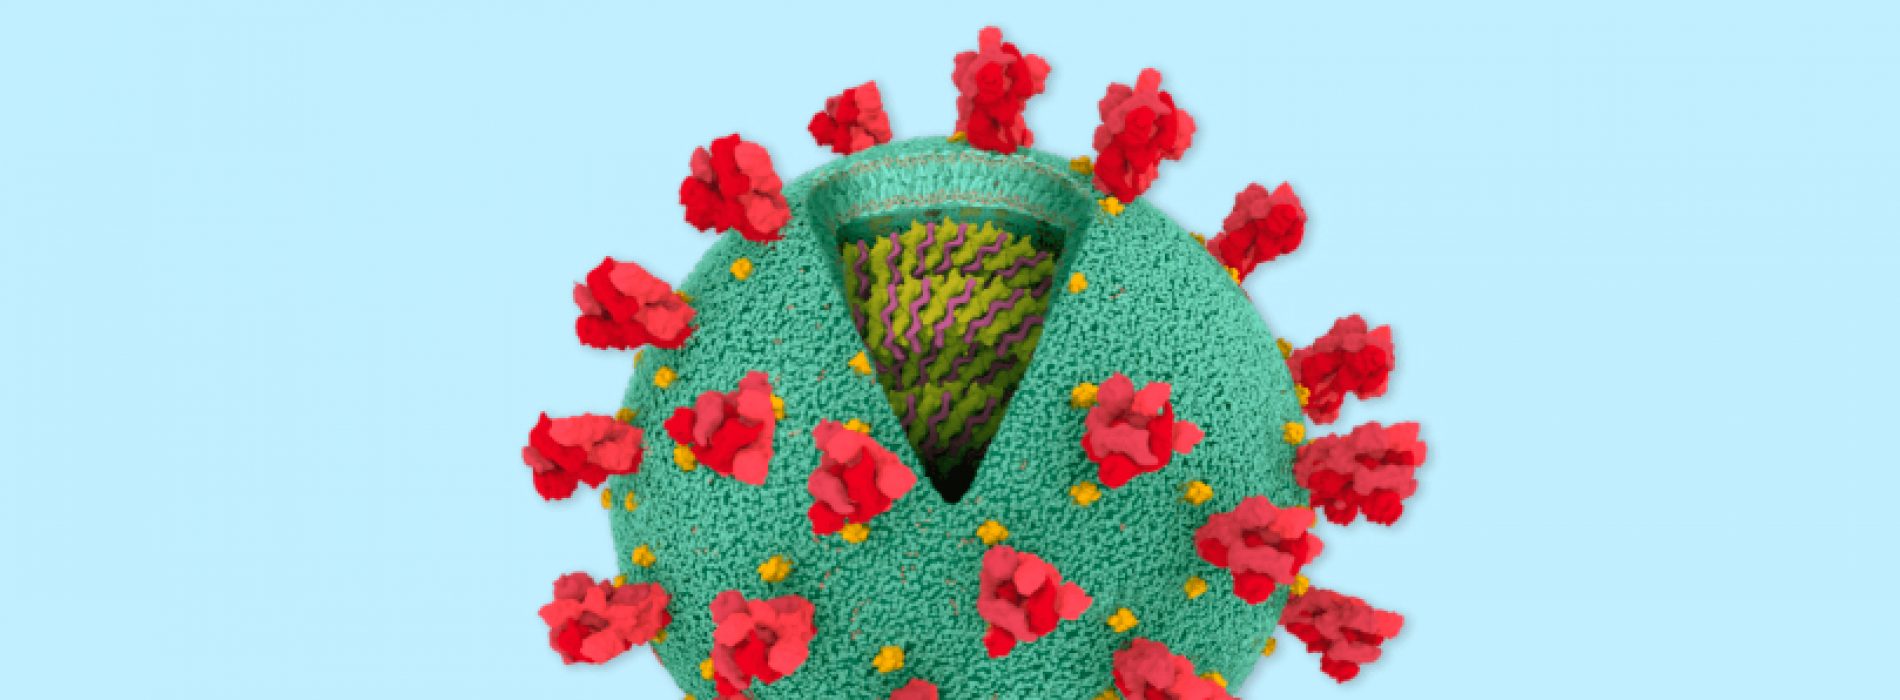 What's inside the Coronavirus?